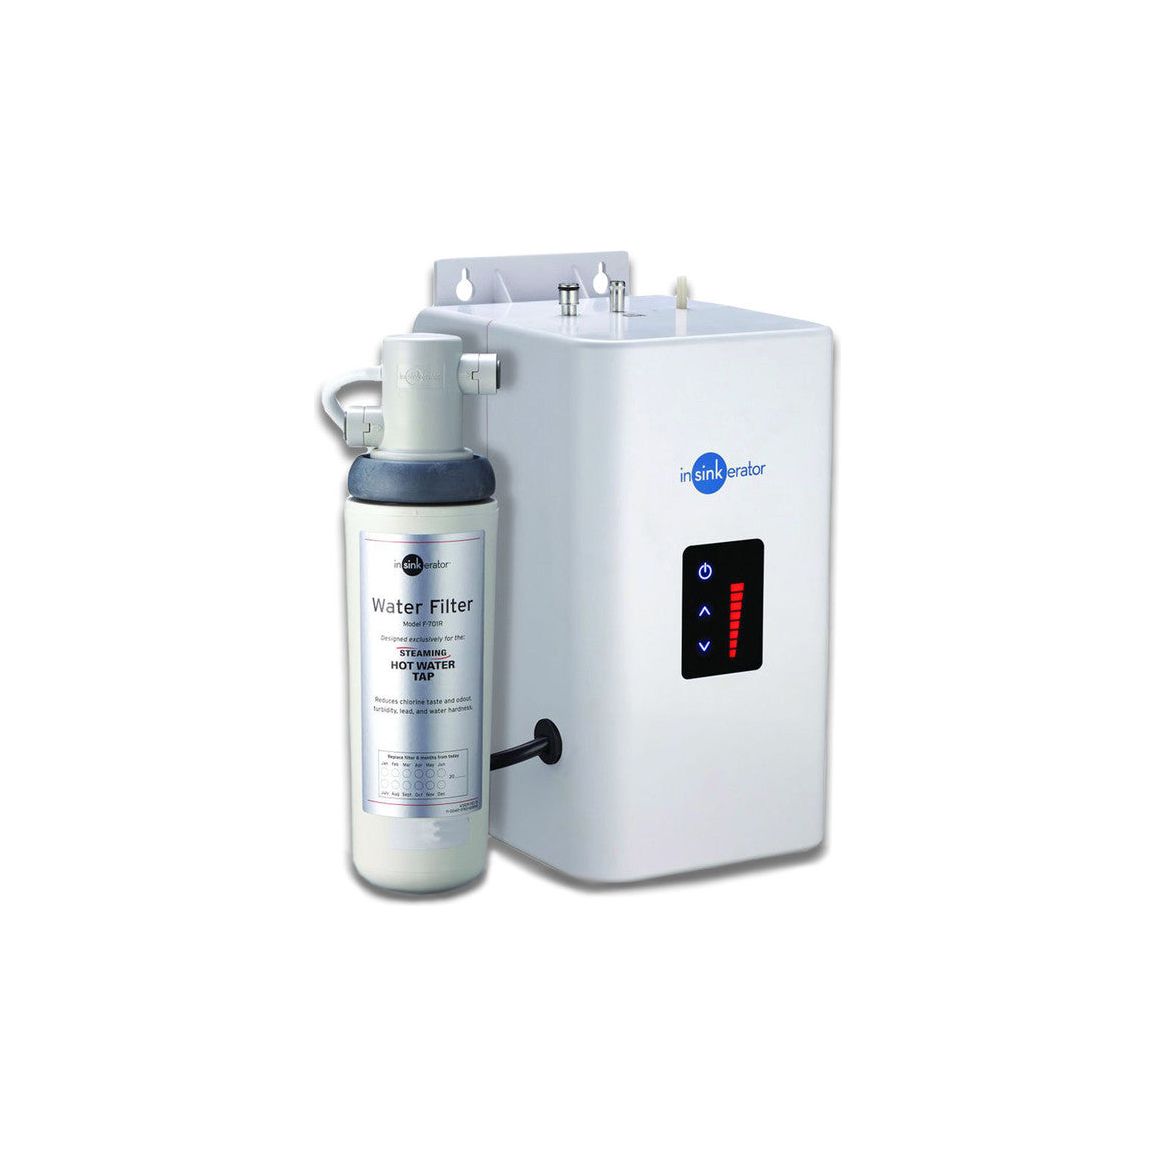 Robinet d'eau chaude InSinkErator GN1100, réservoir Neo et filtre à eau - Chrome